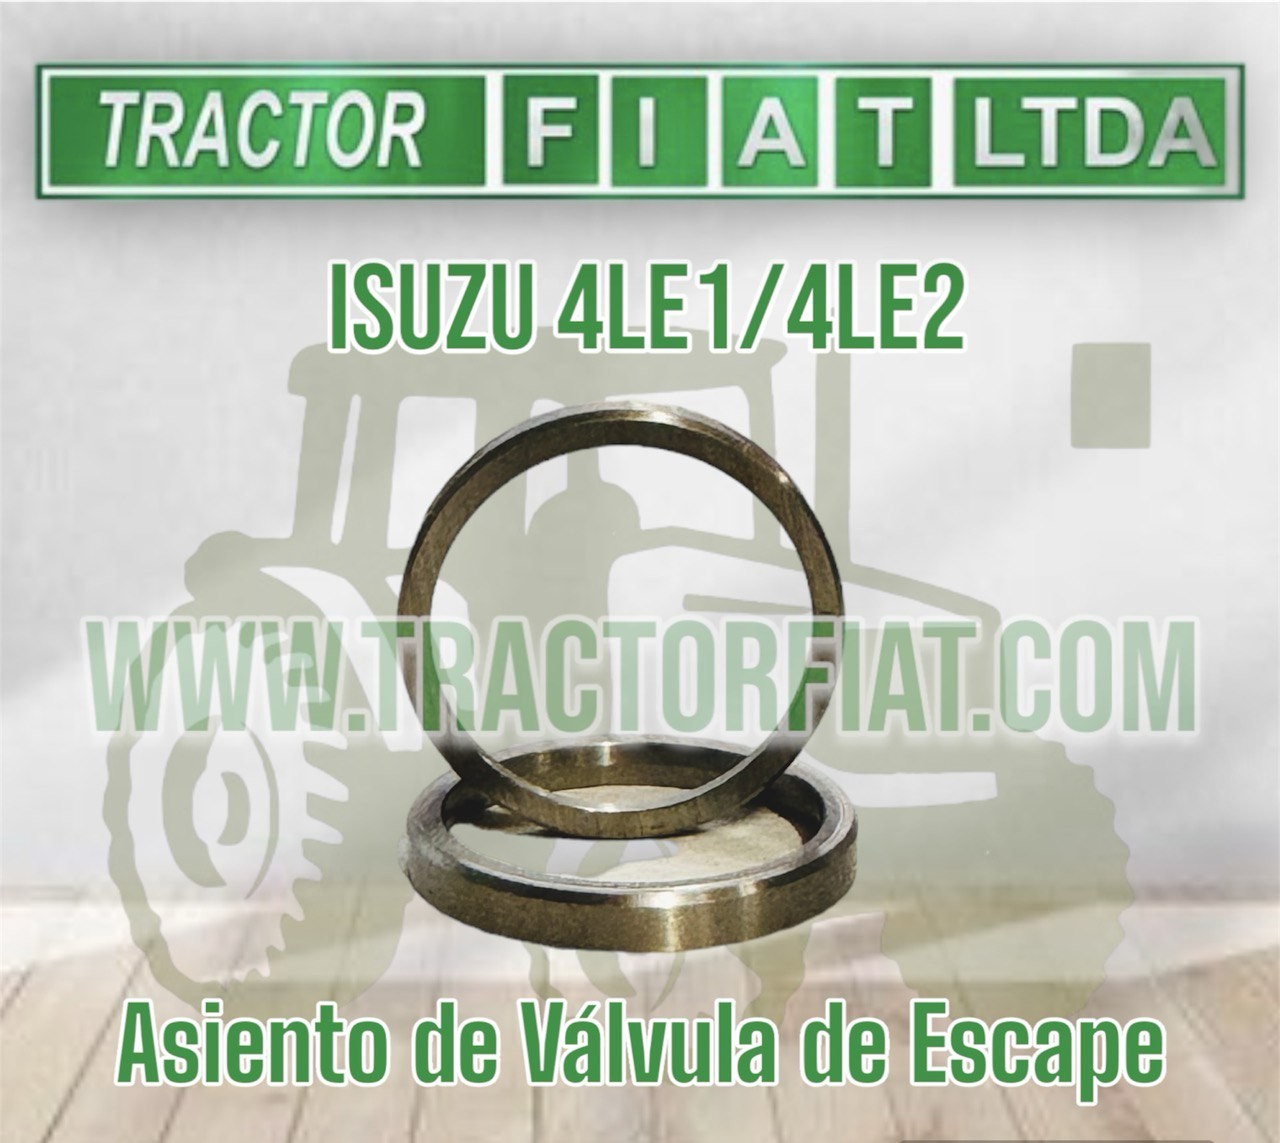 ASIENTOS DE VALVULA DE ESCAPE - MOTOR ISUZU 4LE1/4LE2